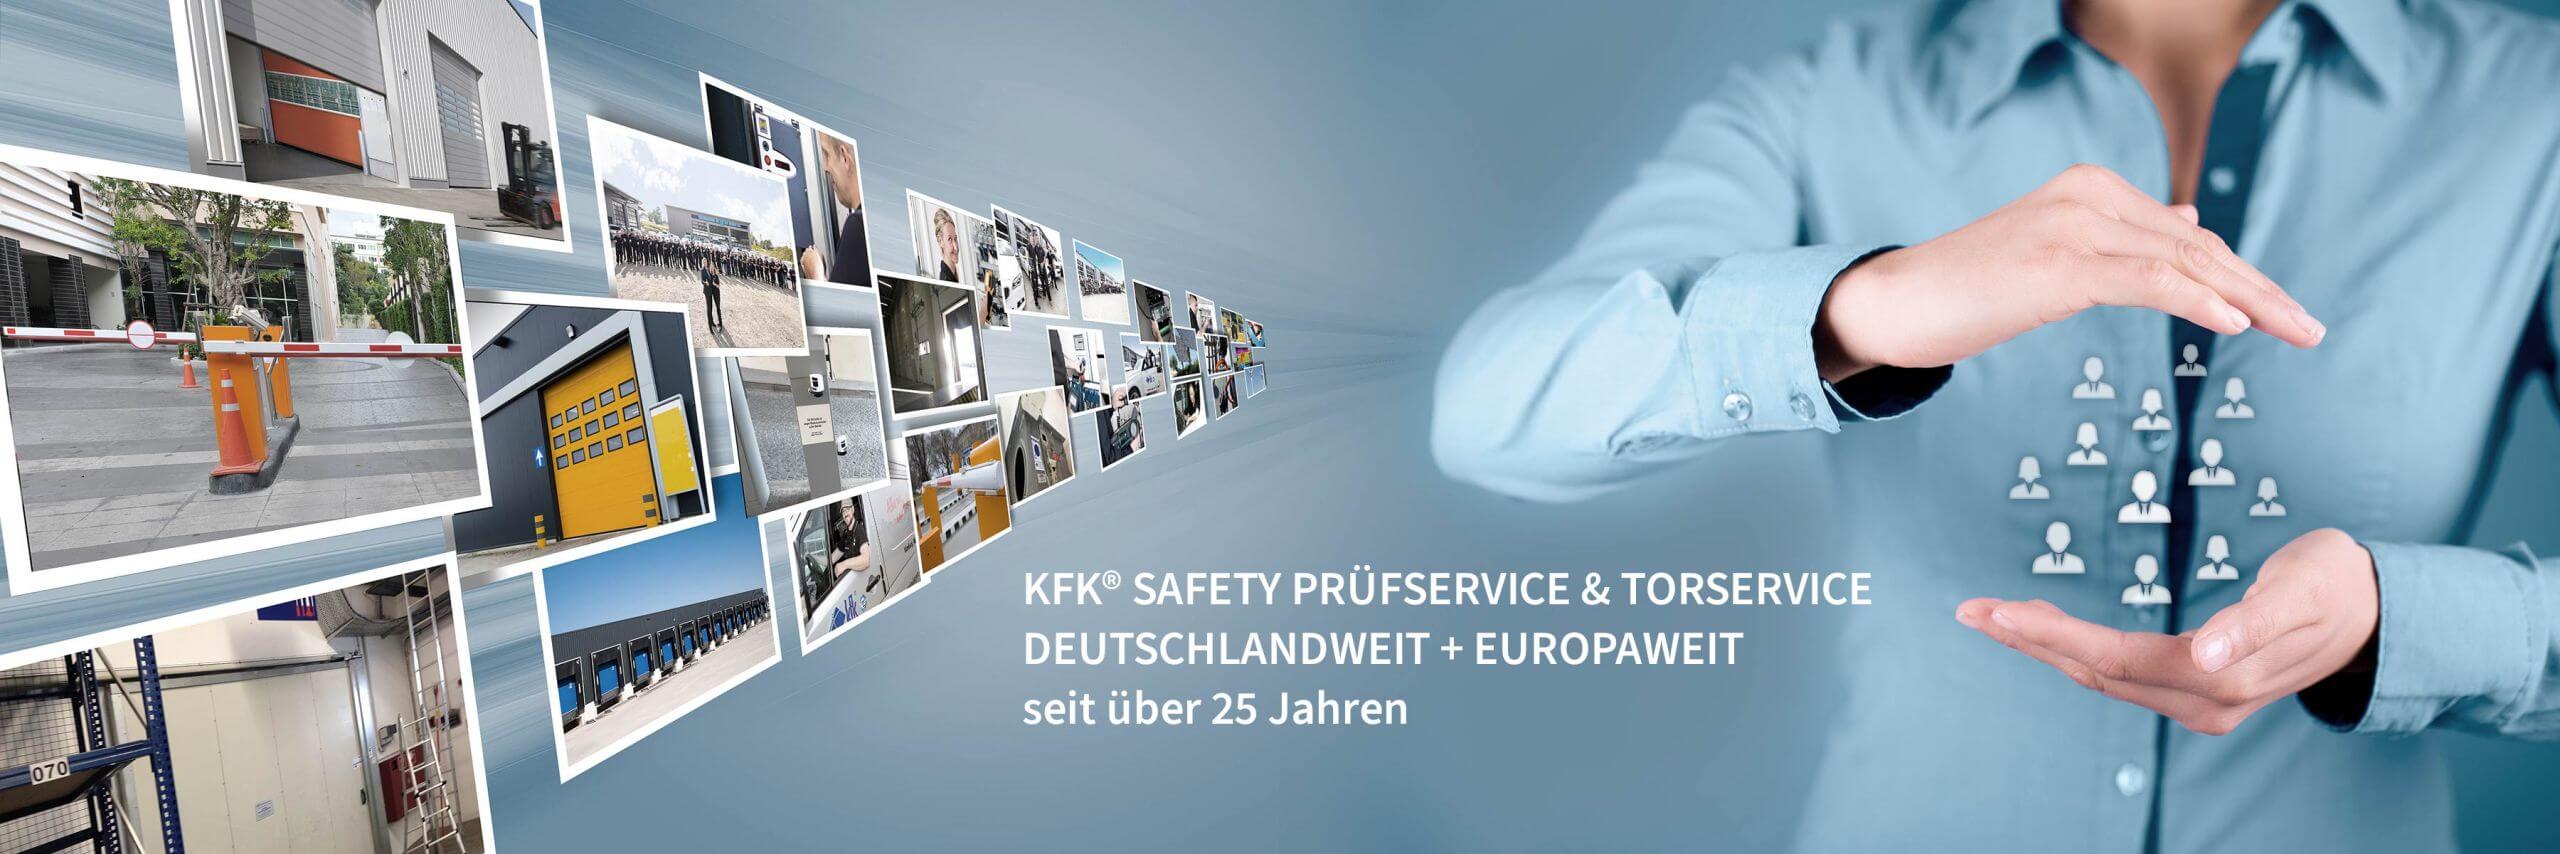 KFK® Safety Prüfservice & Torservice